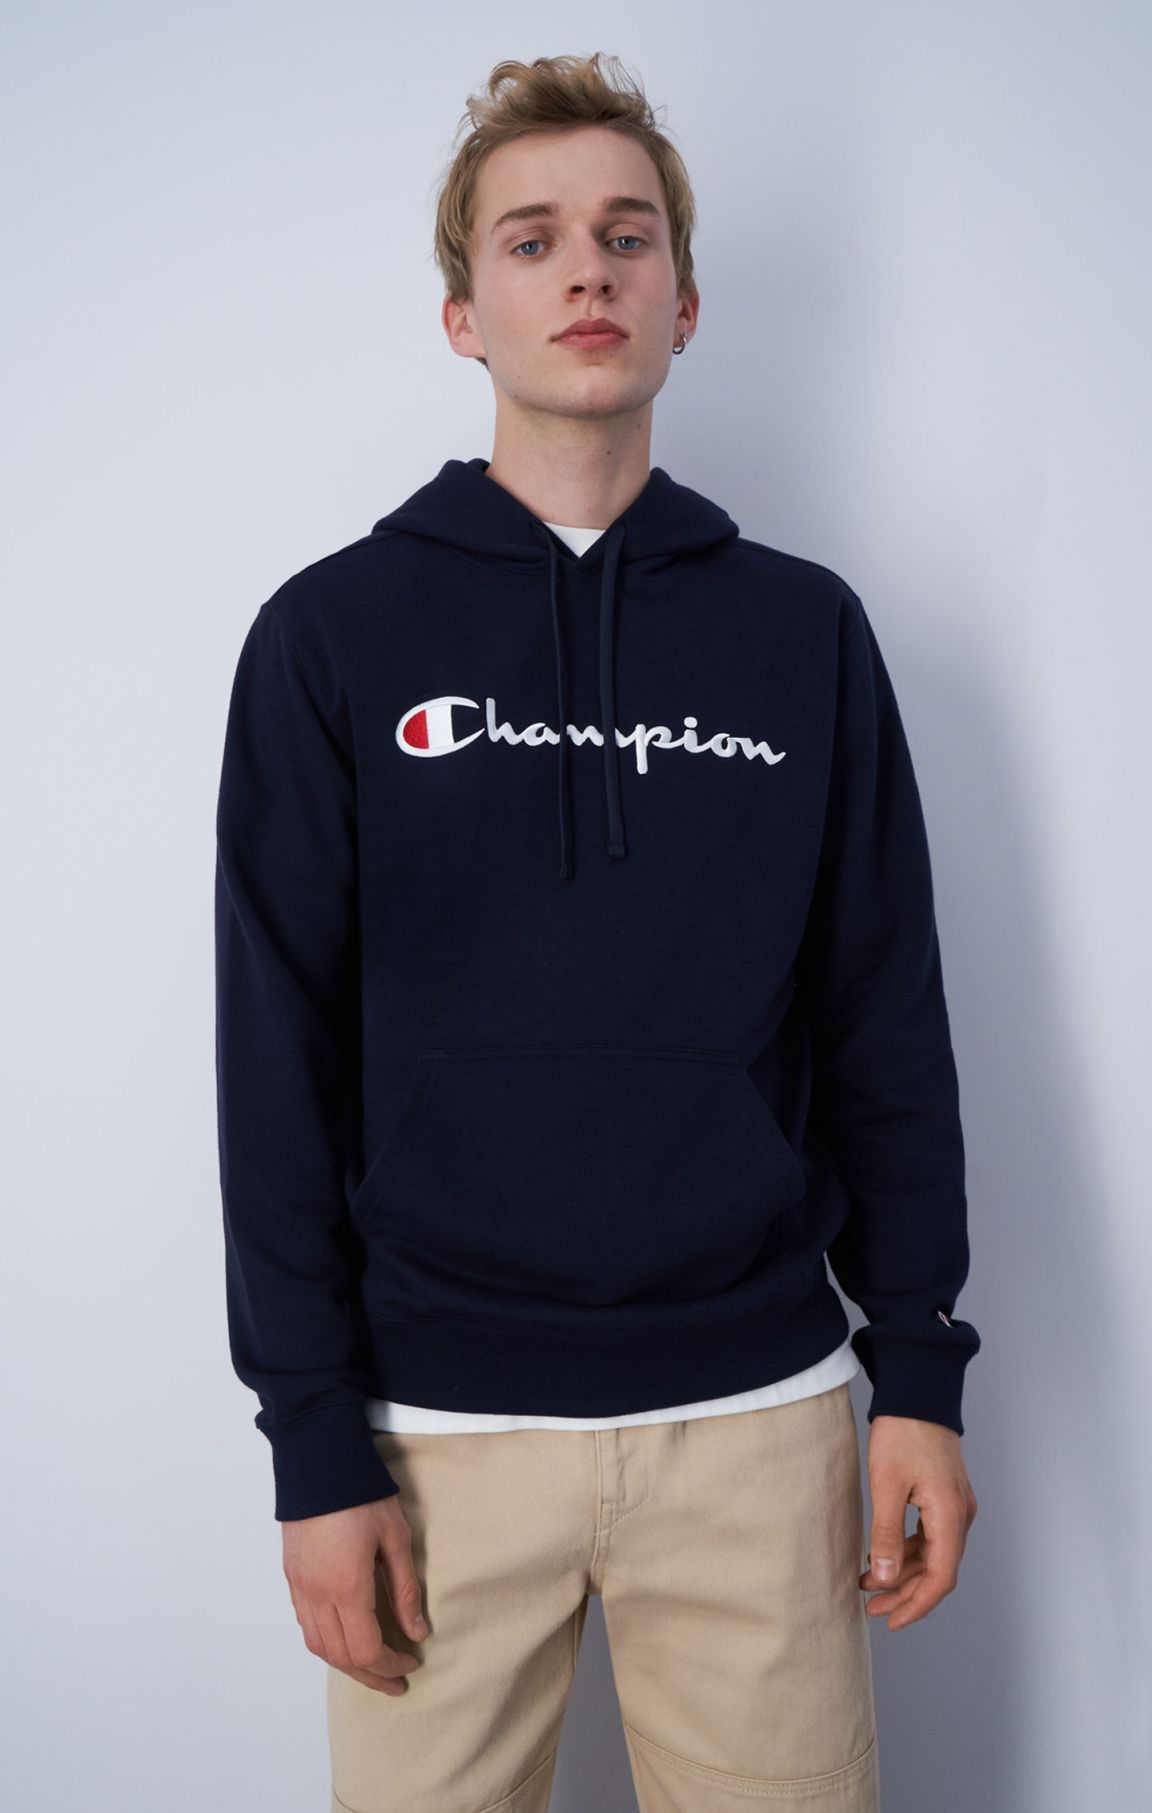 Sweatshirt à capuche et grand logo Champion brodé